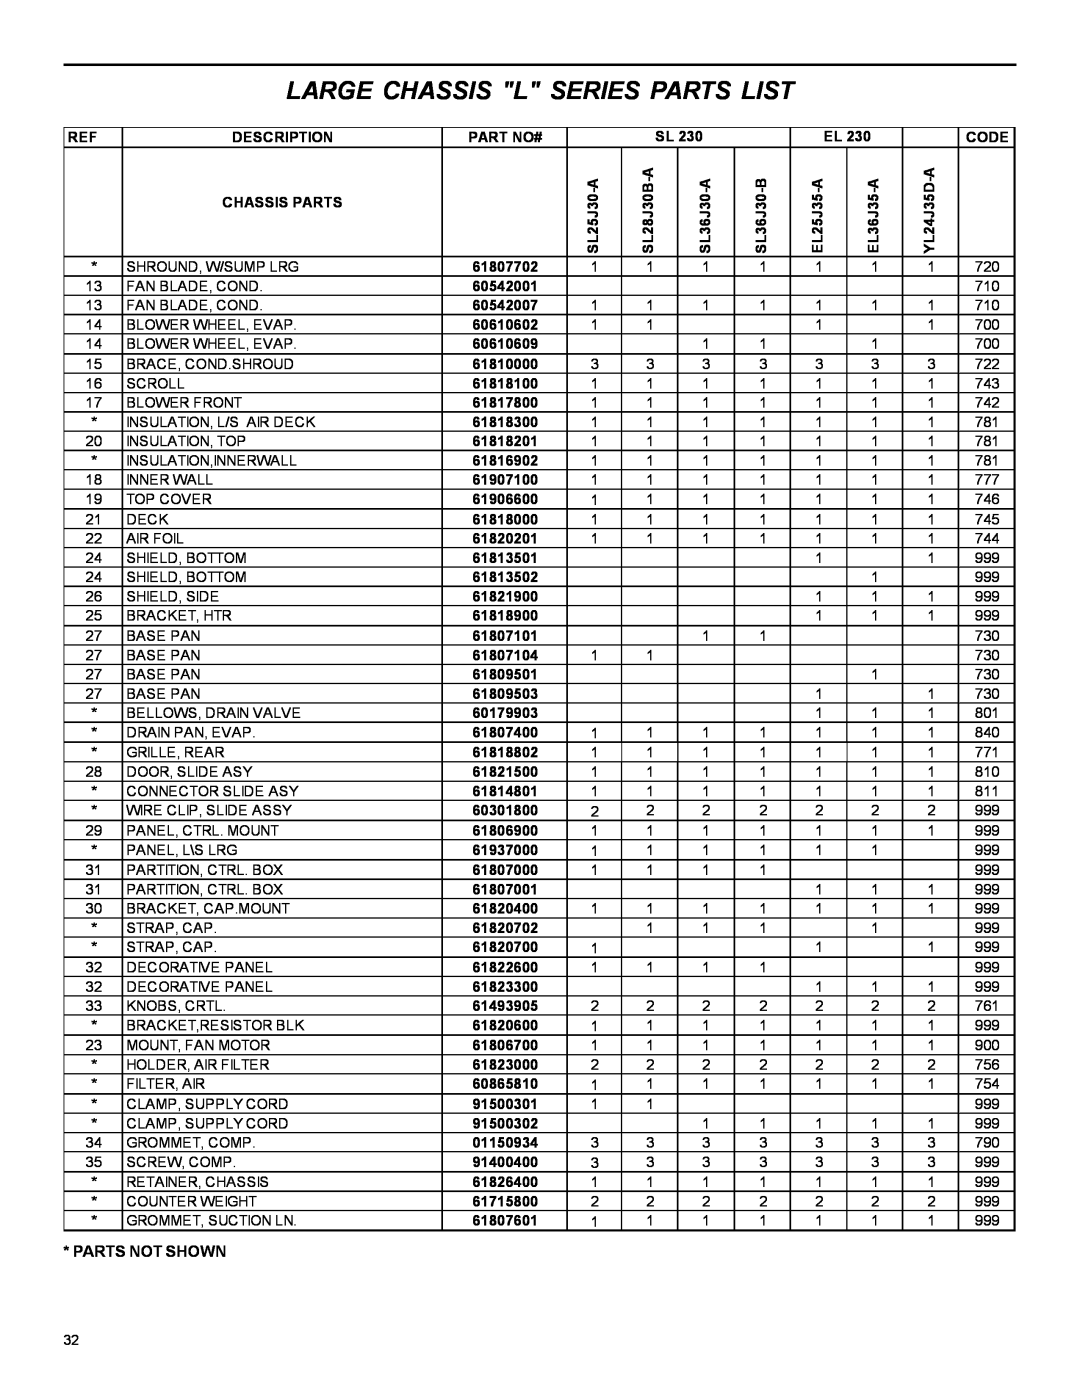 Friedrich 2004 manual Large Chassis L Series Parts List, Description 